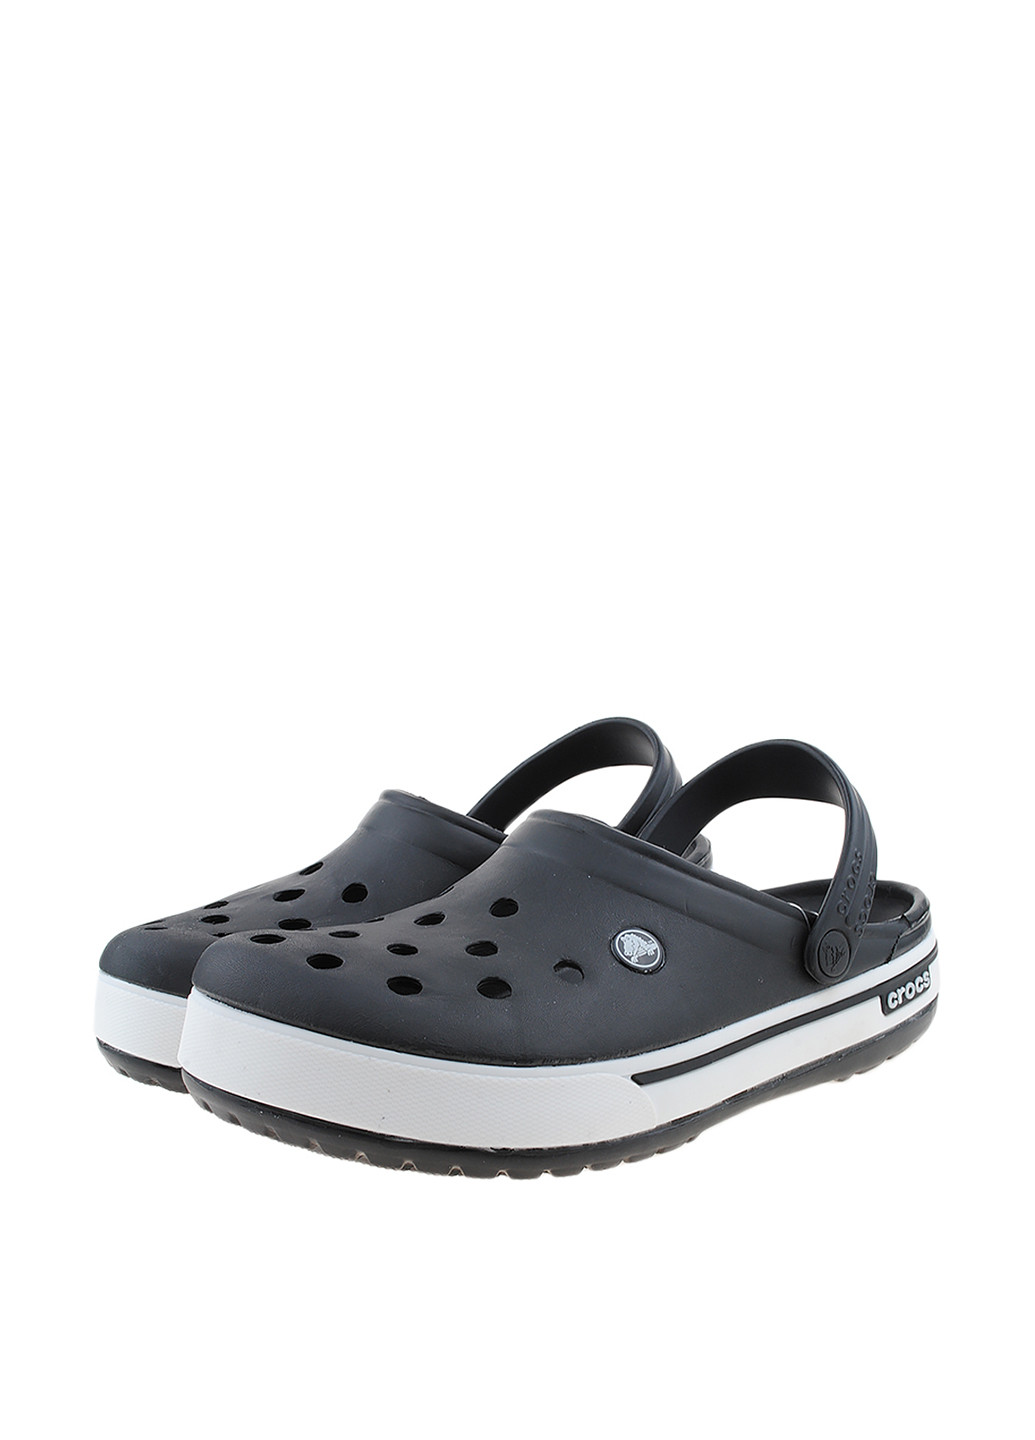 Черно-белые сабо Crocs без каблука